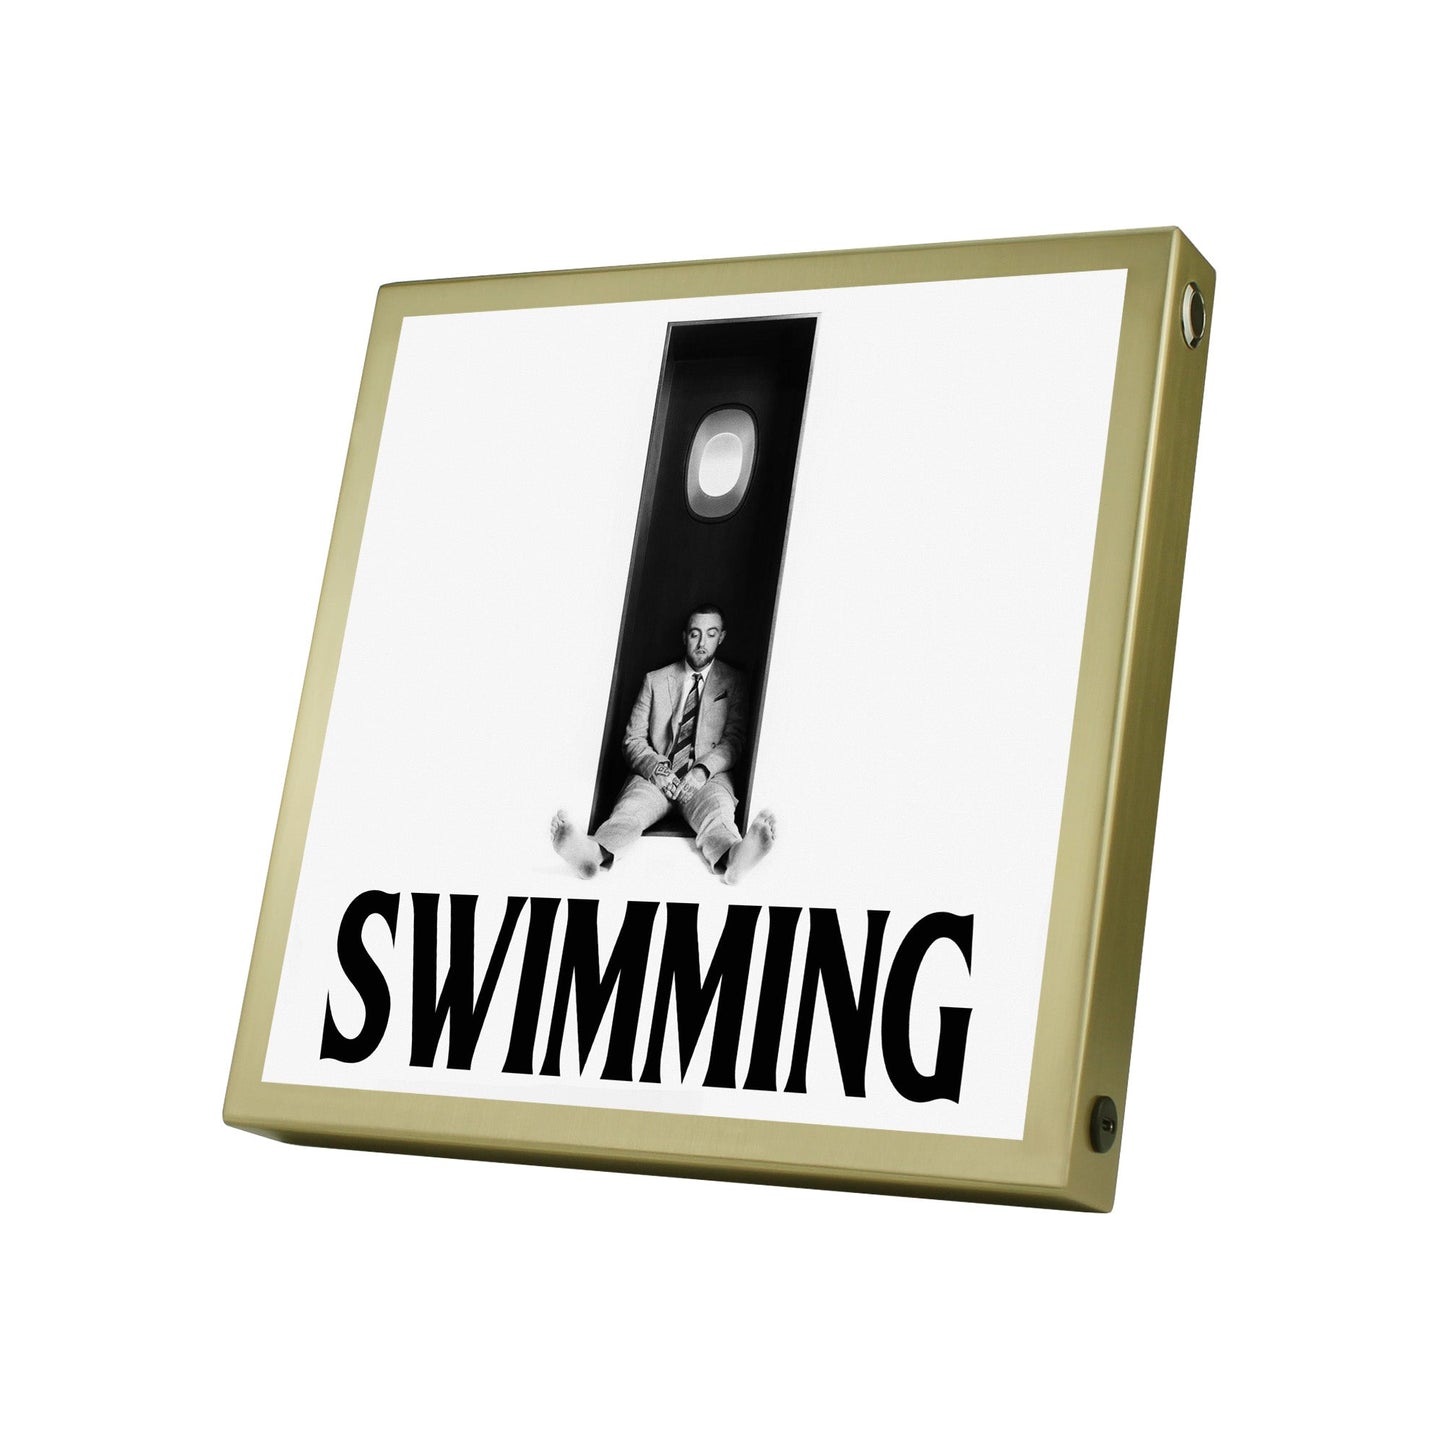 Swimming Mac Miller Album Cover Poster